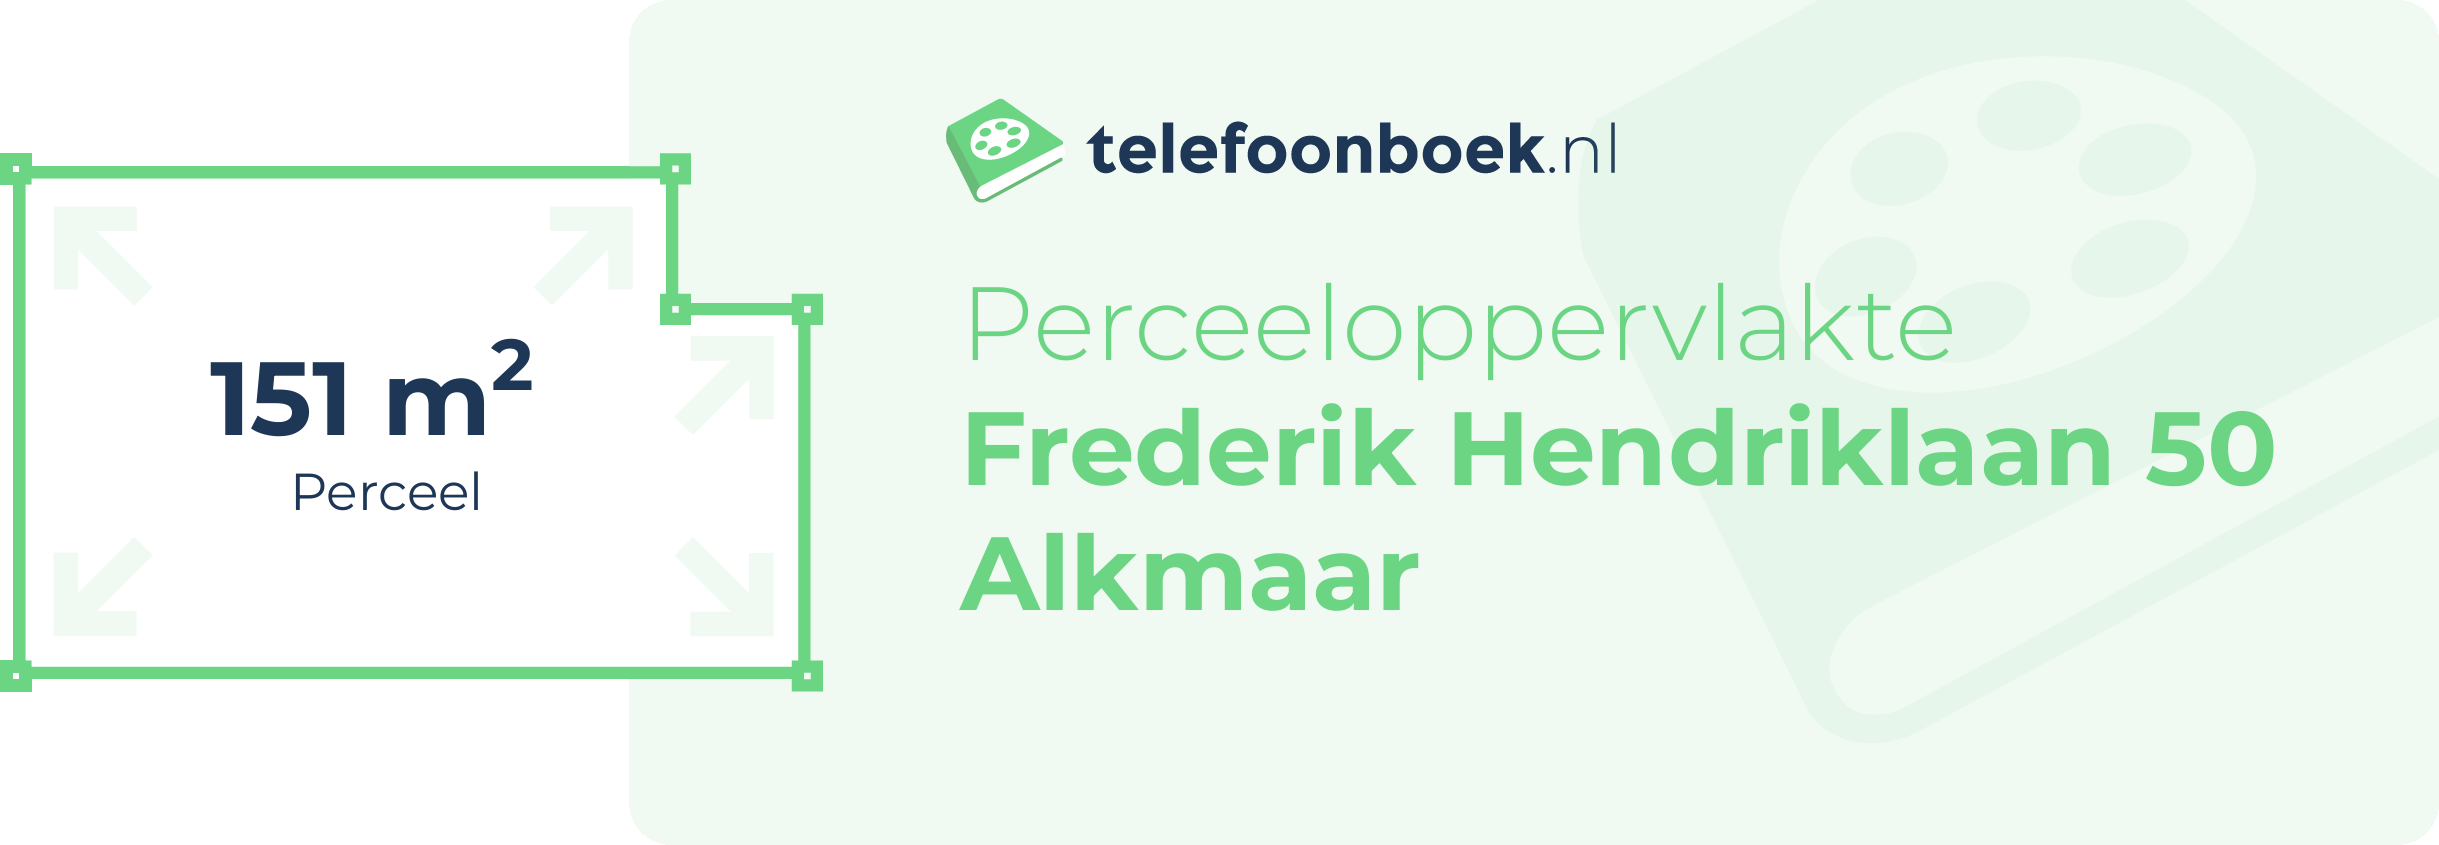 Perceeloppervlakte Frederik Hendriklaan 50 Alkmaar